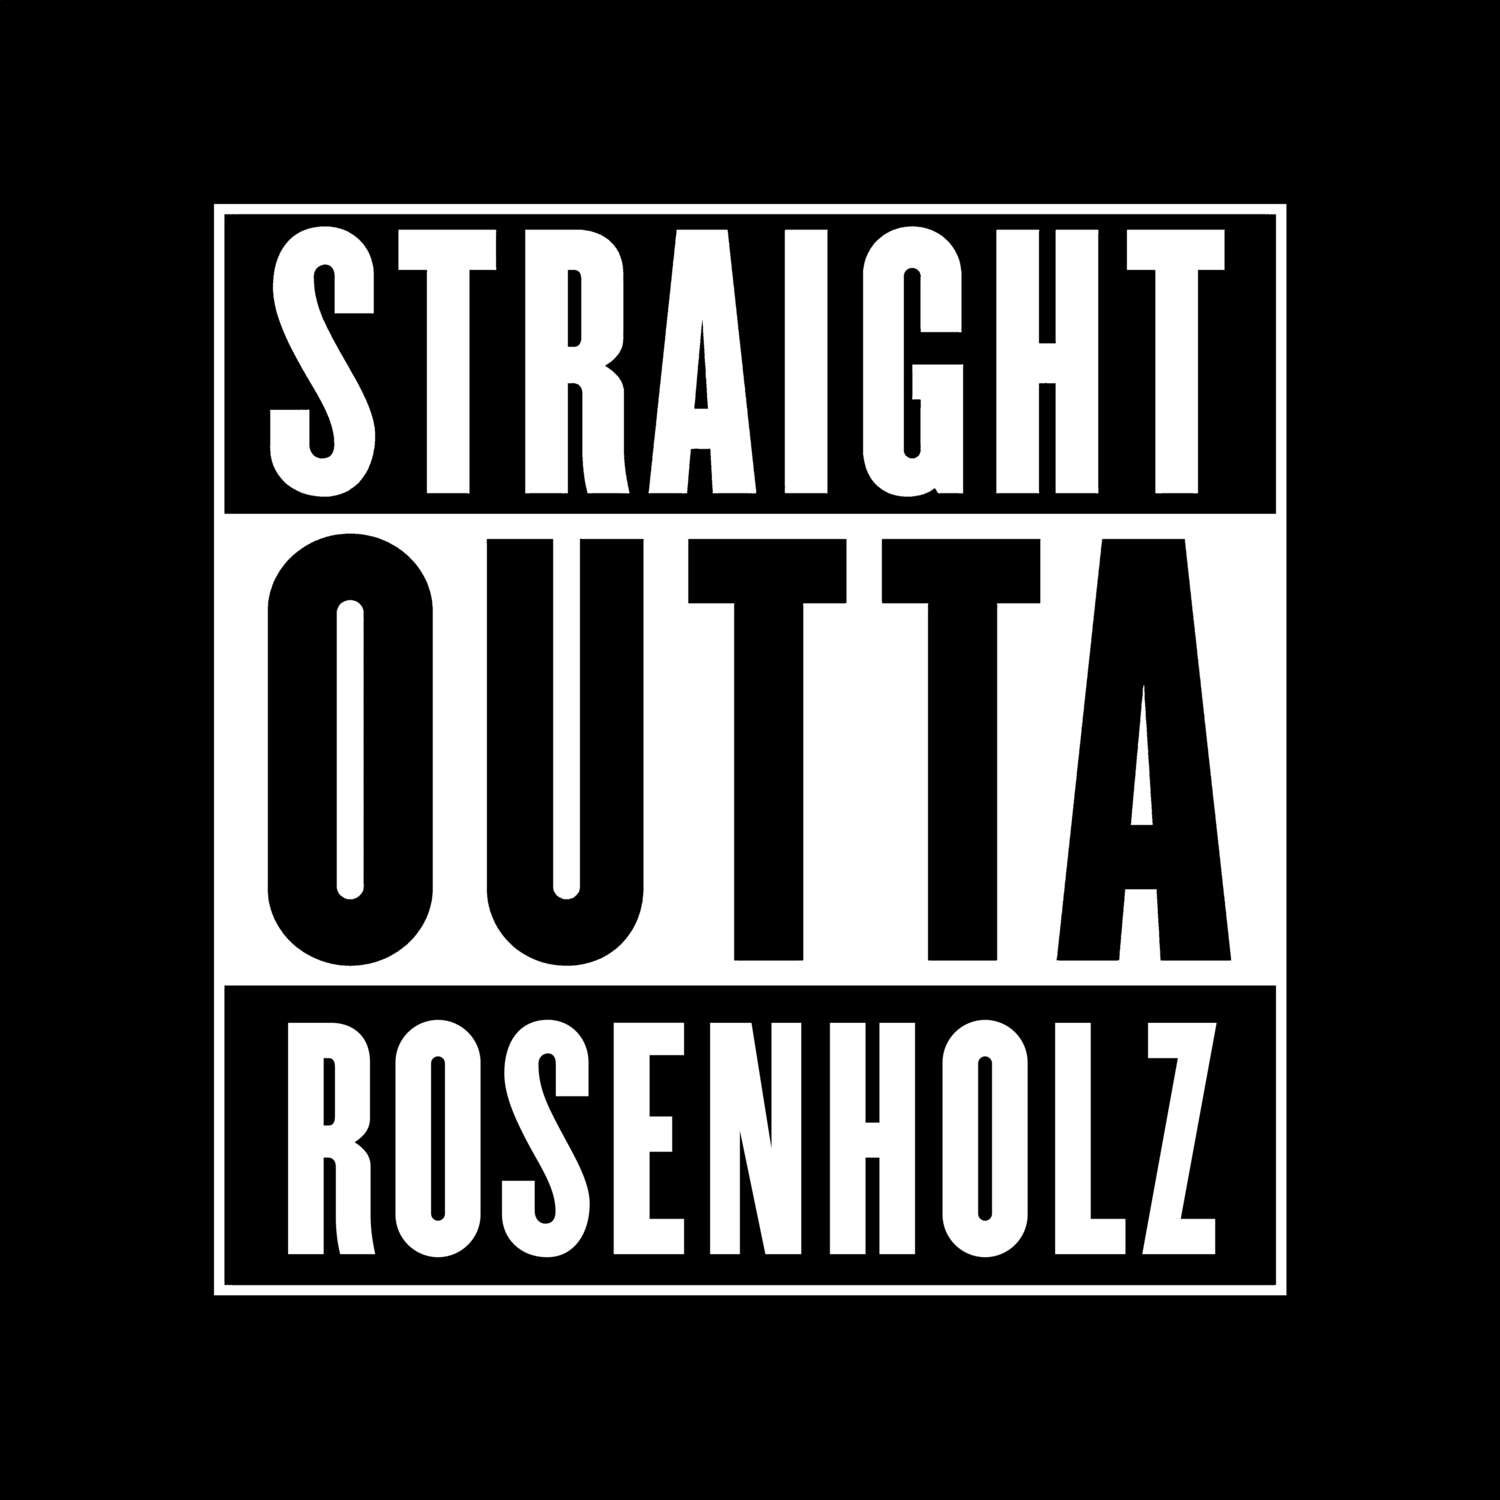 Rosenholz T-Shirt »Straight Outta«